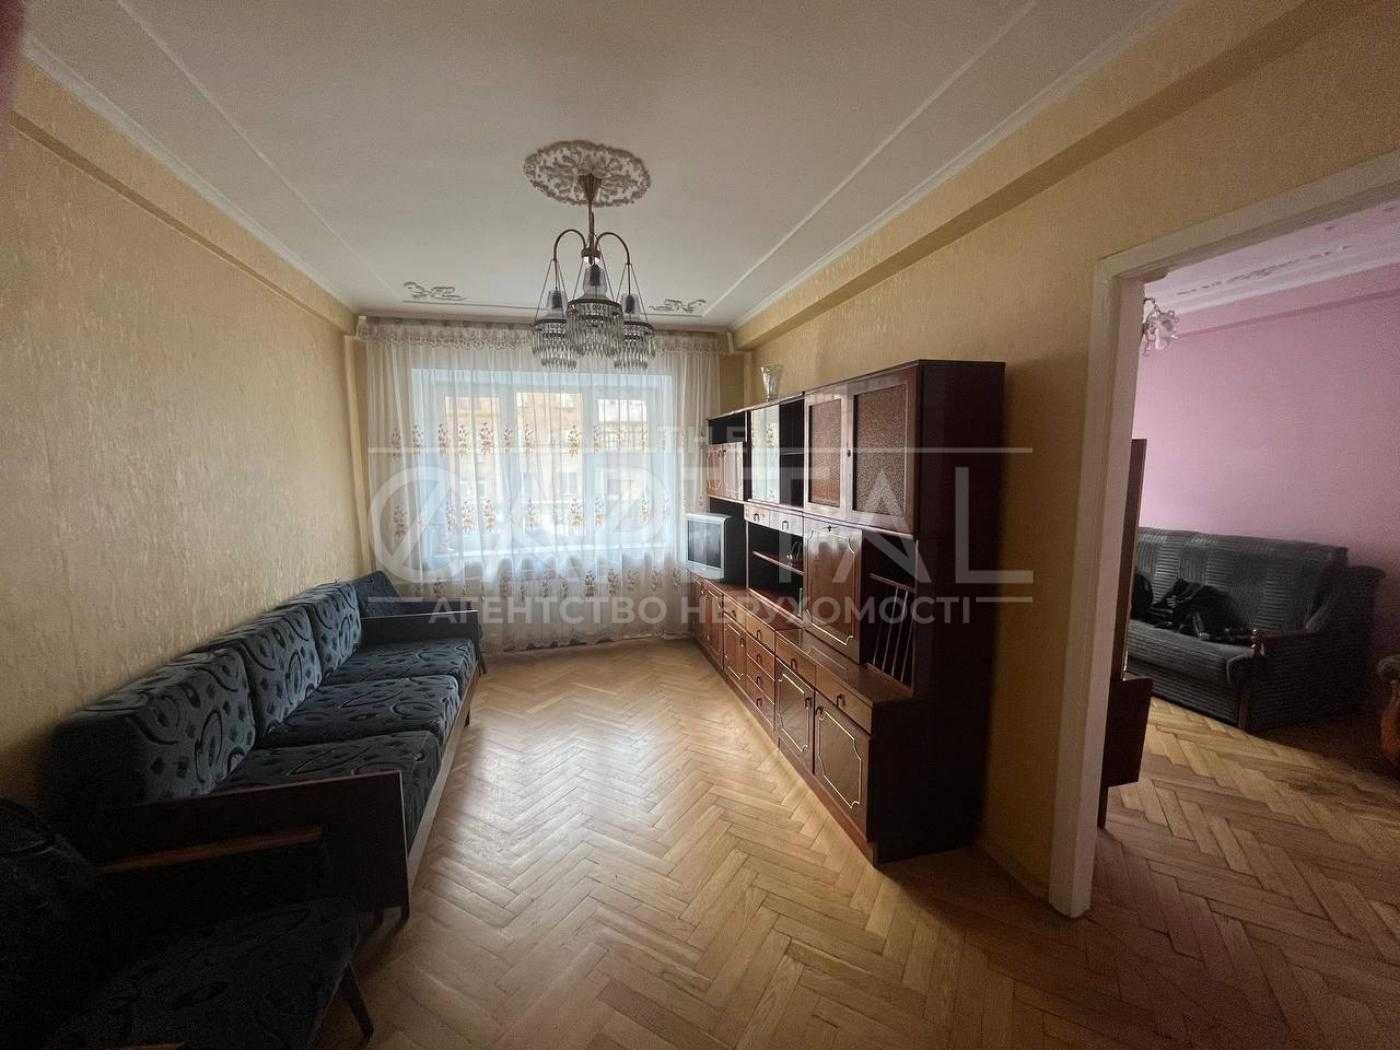 Продаж 2-х кімнатної квартири, ЦЕНТР, Велика Васильківська, ліфт